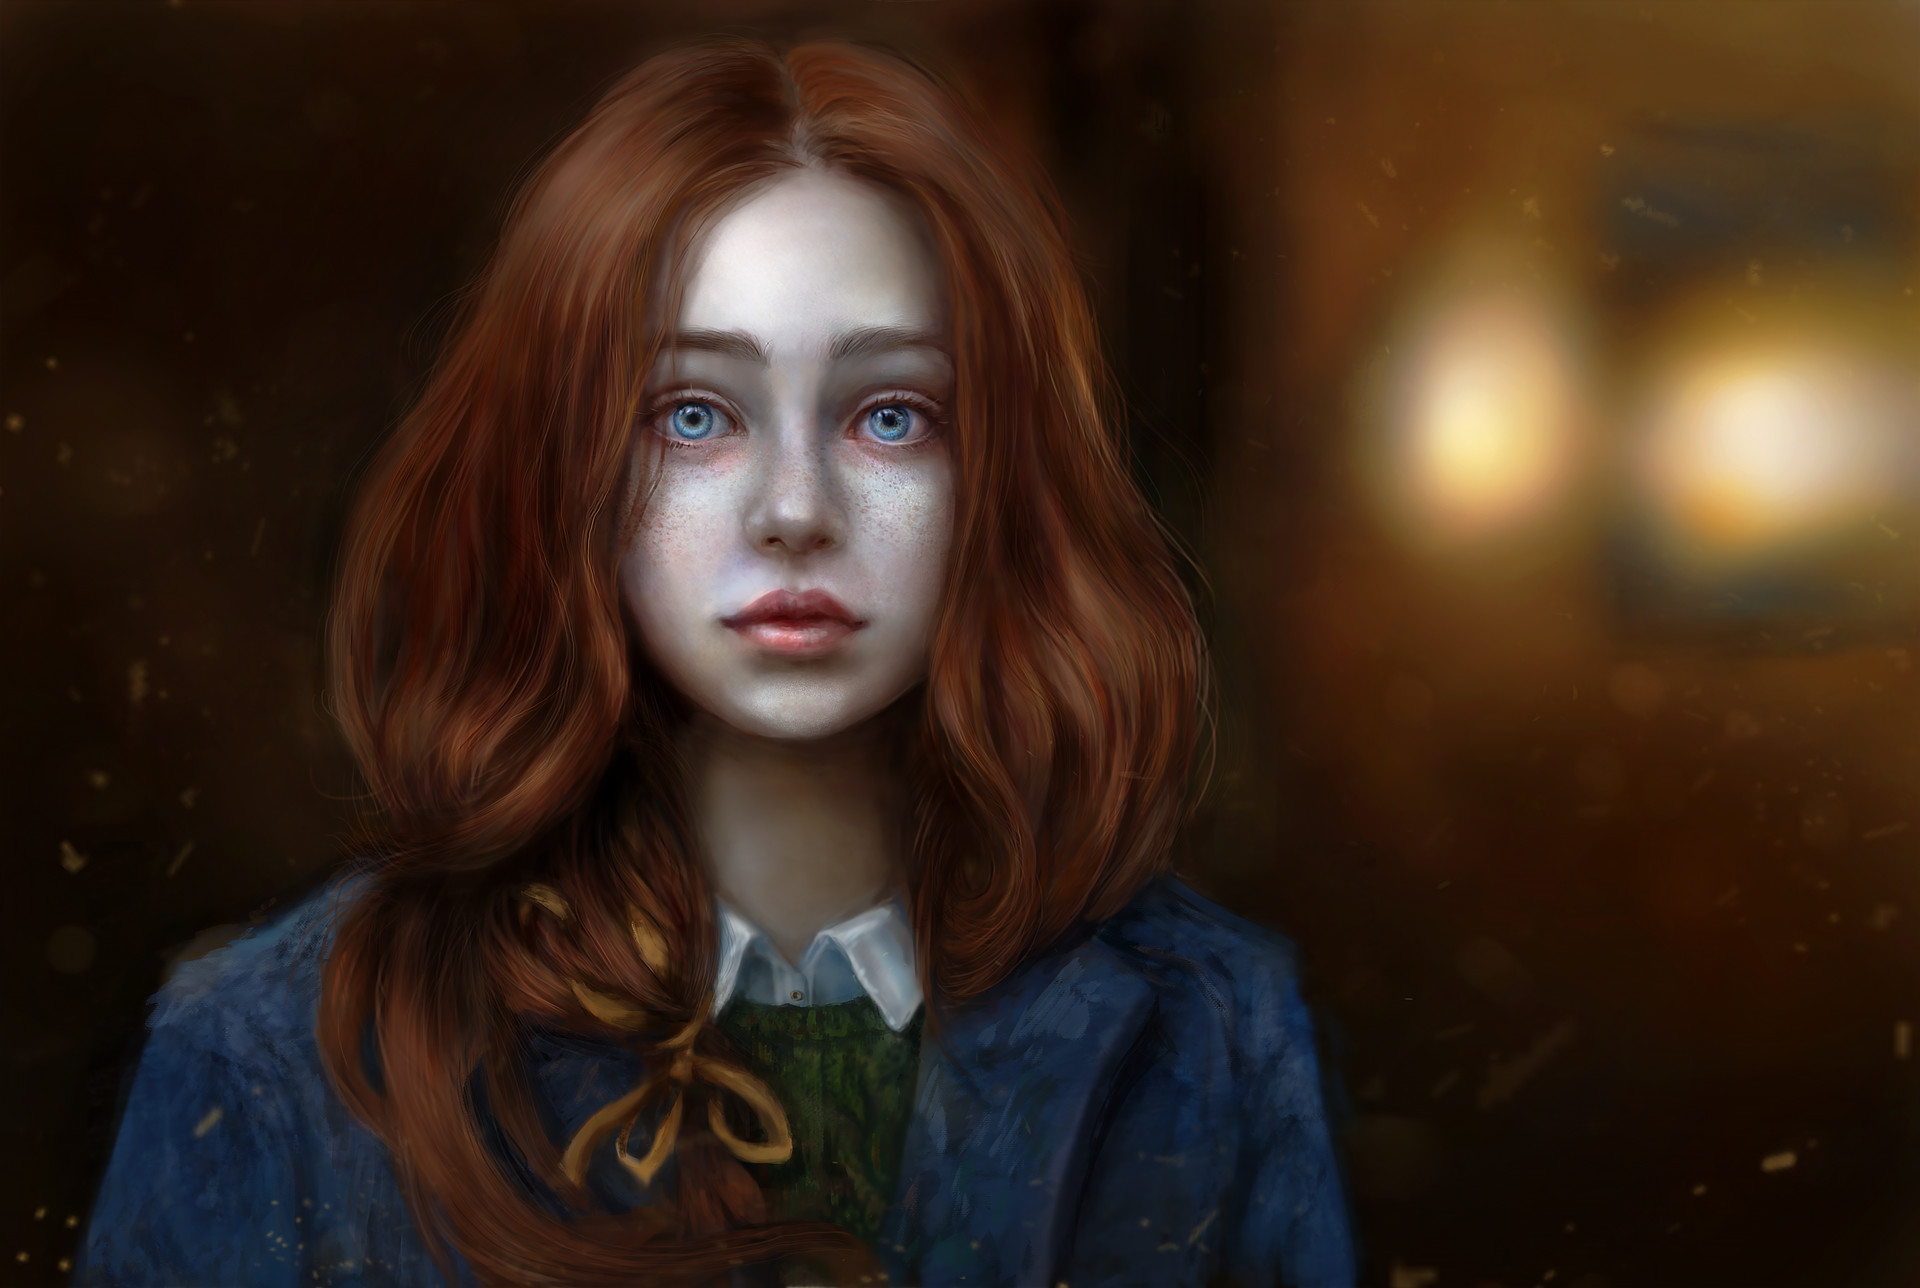 ArtStation - Portrait of a beautiful girl